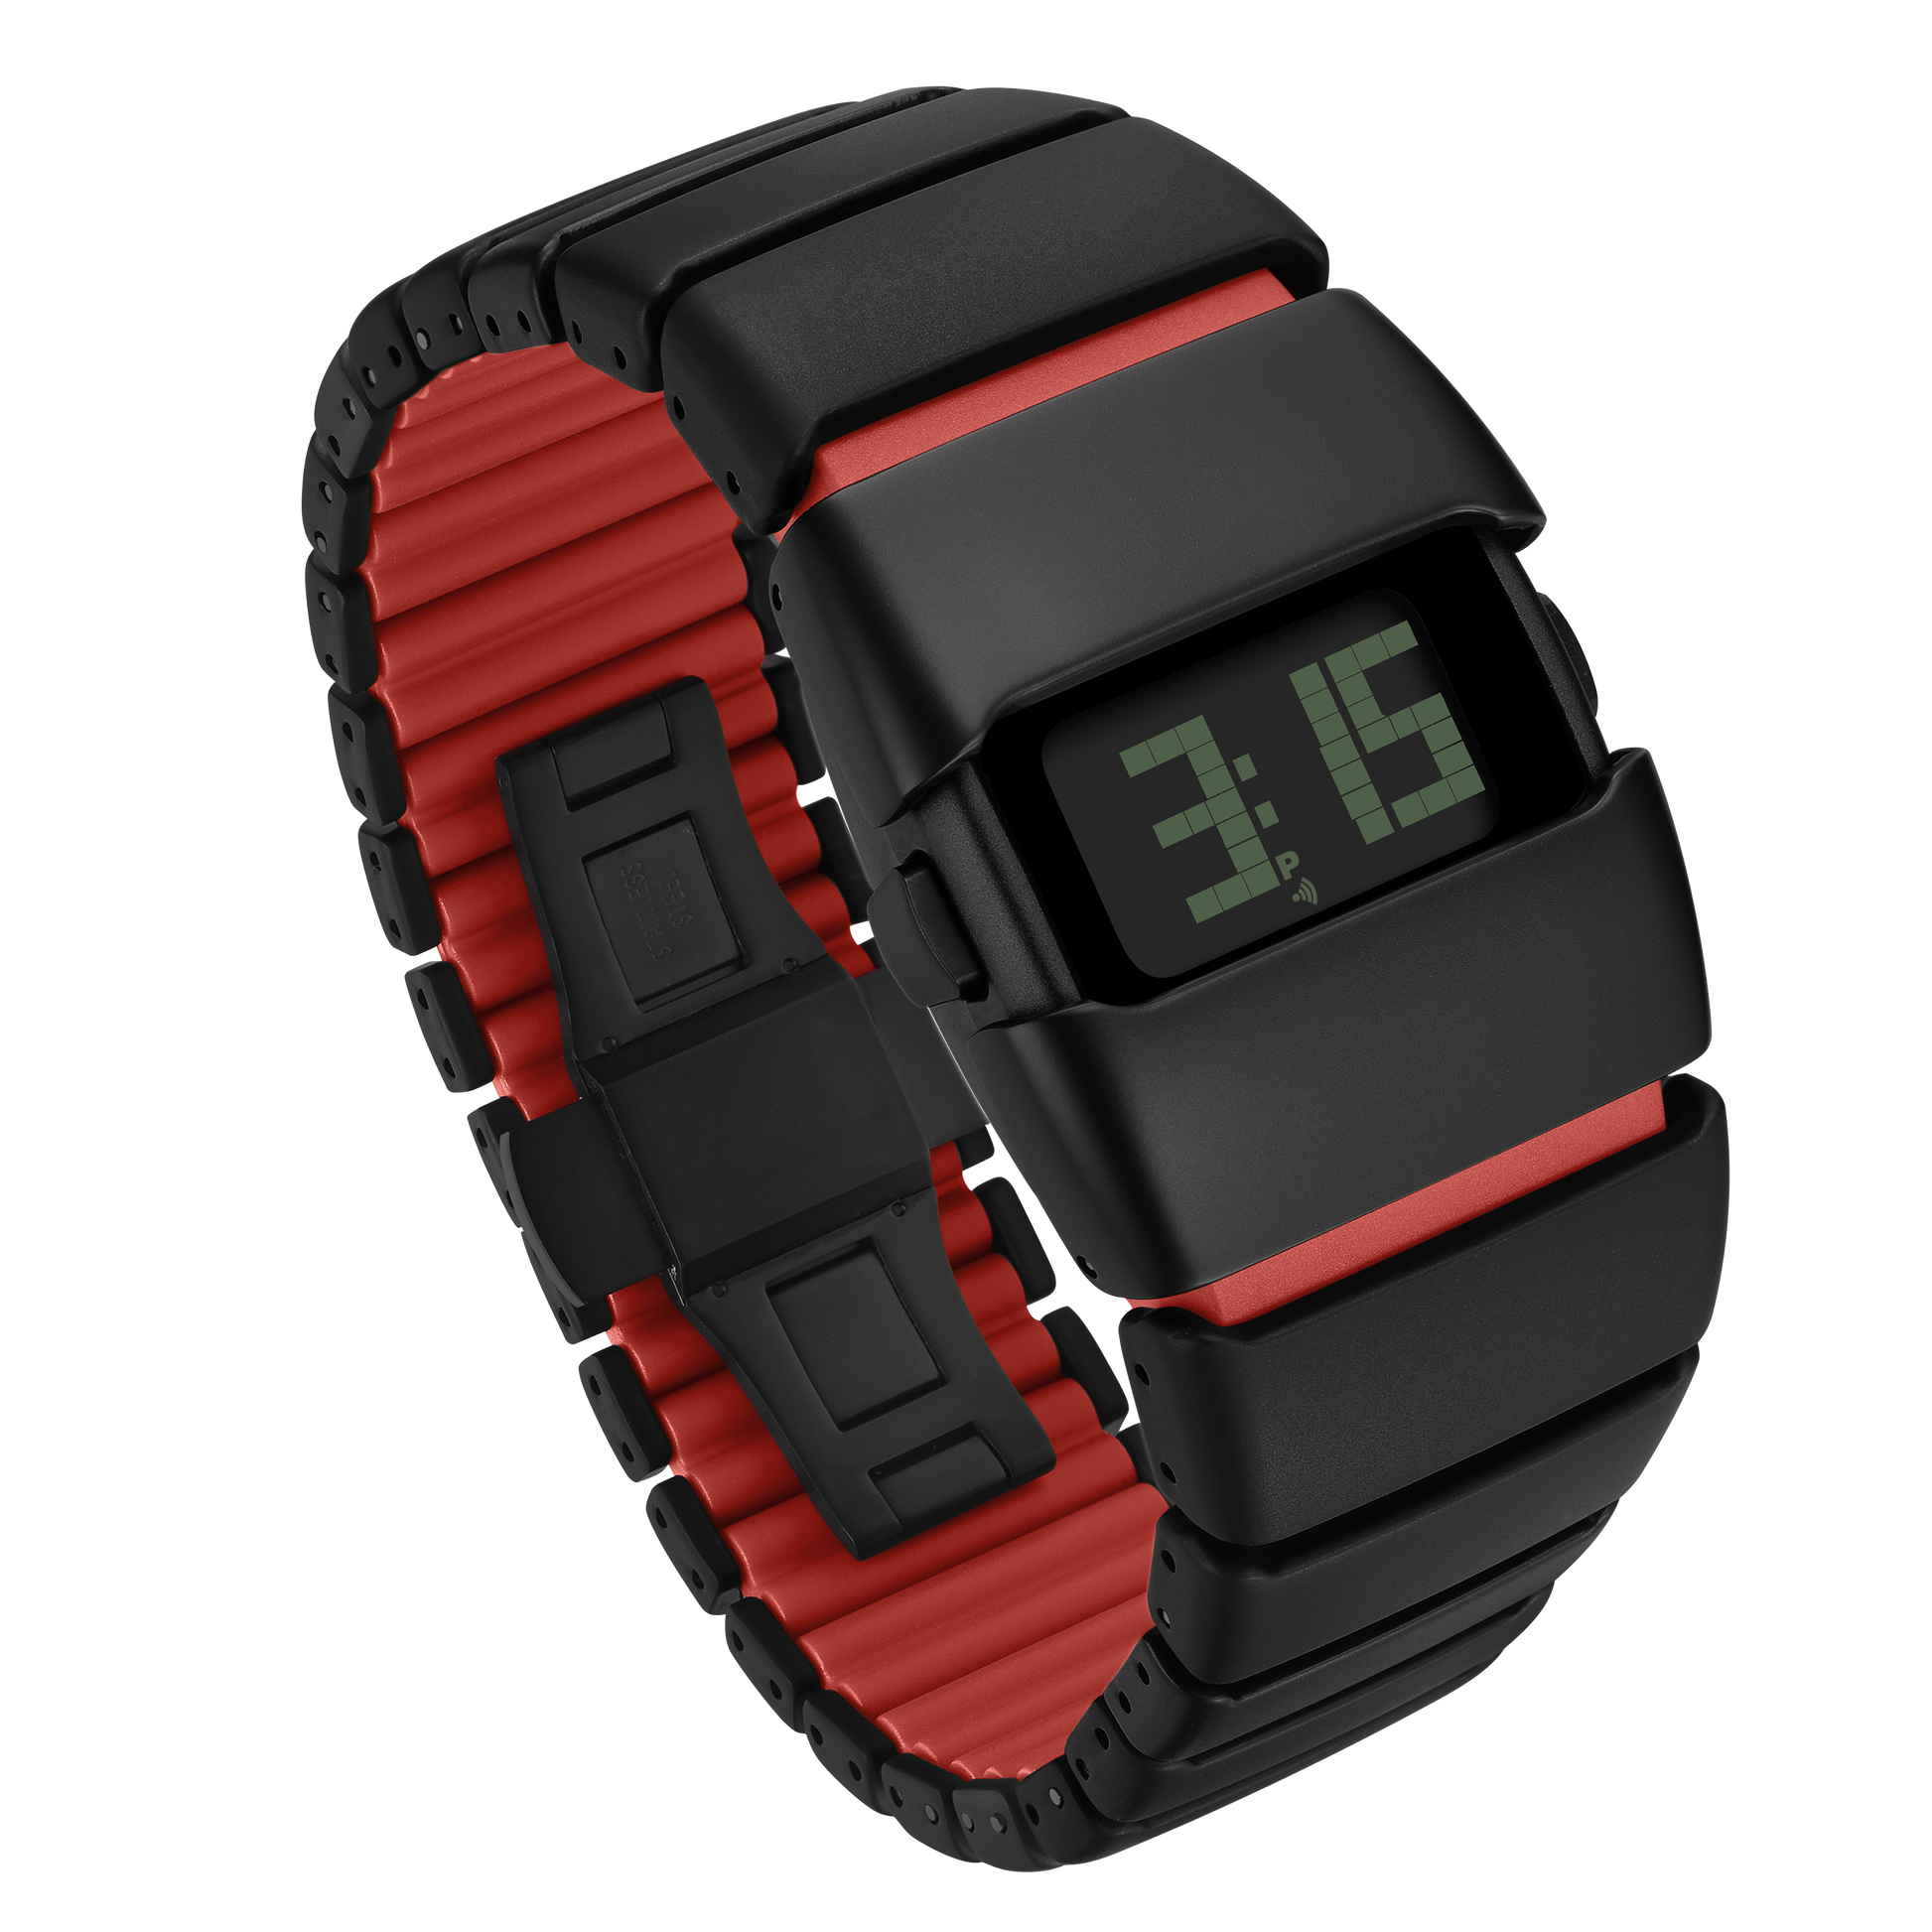 X6000 Cyber Watch